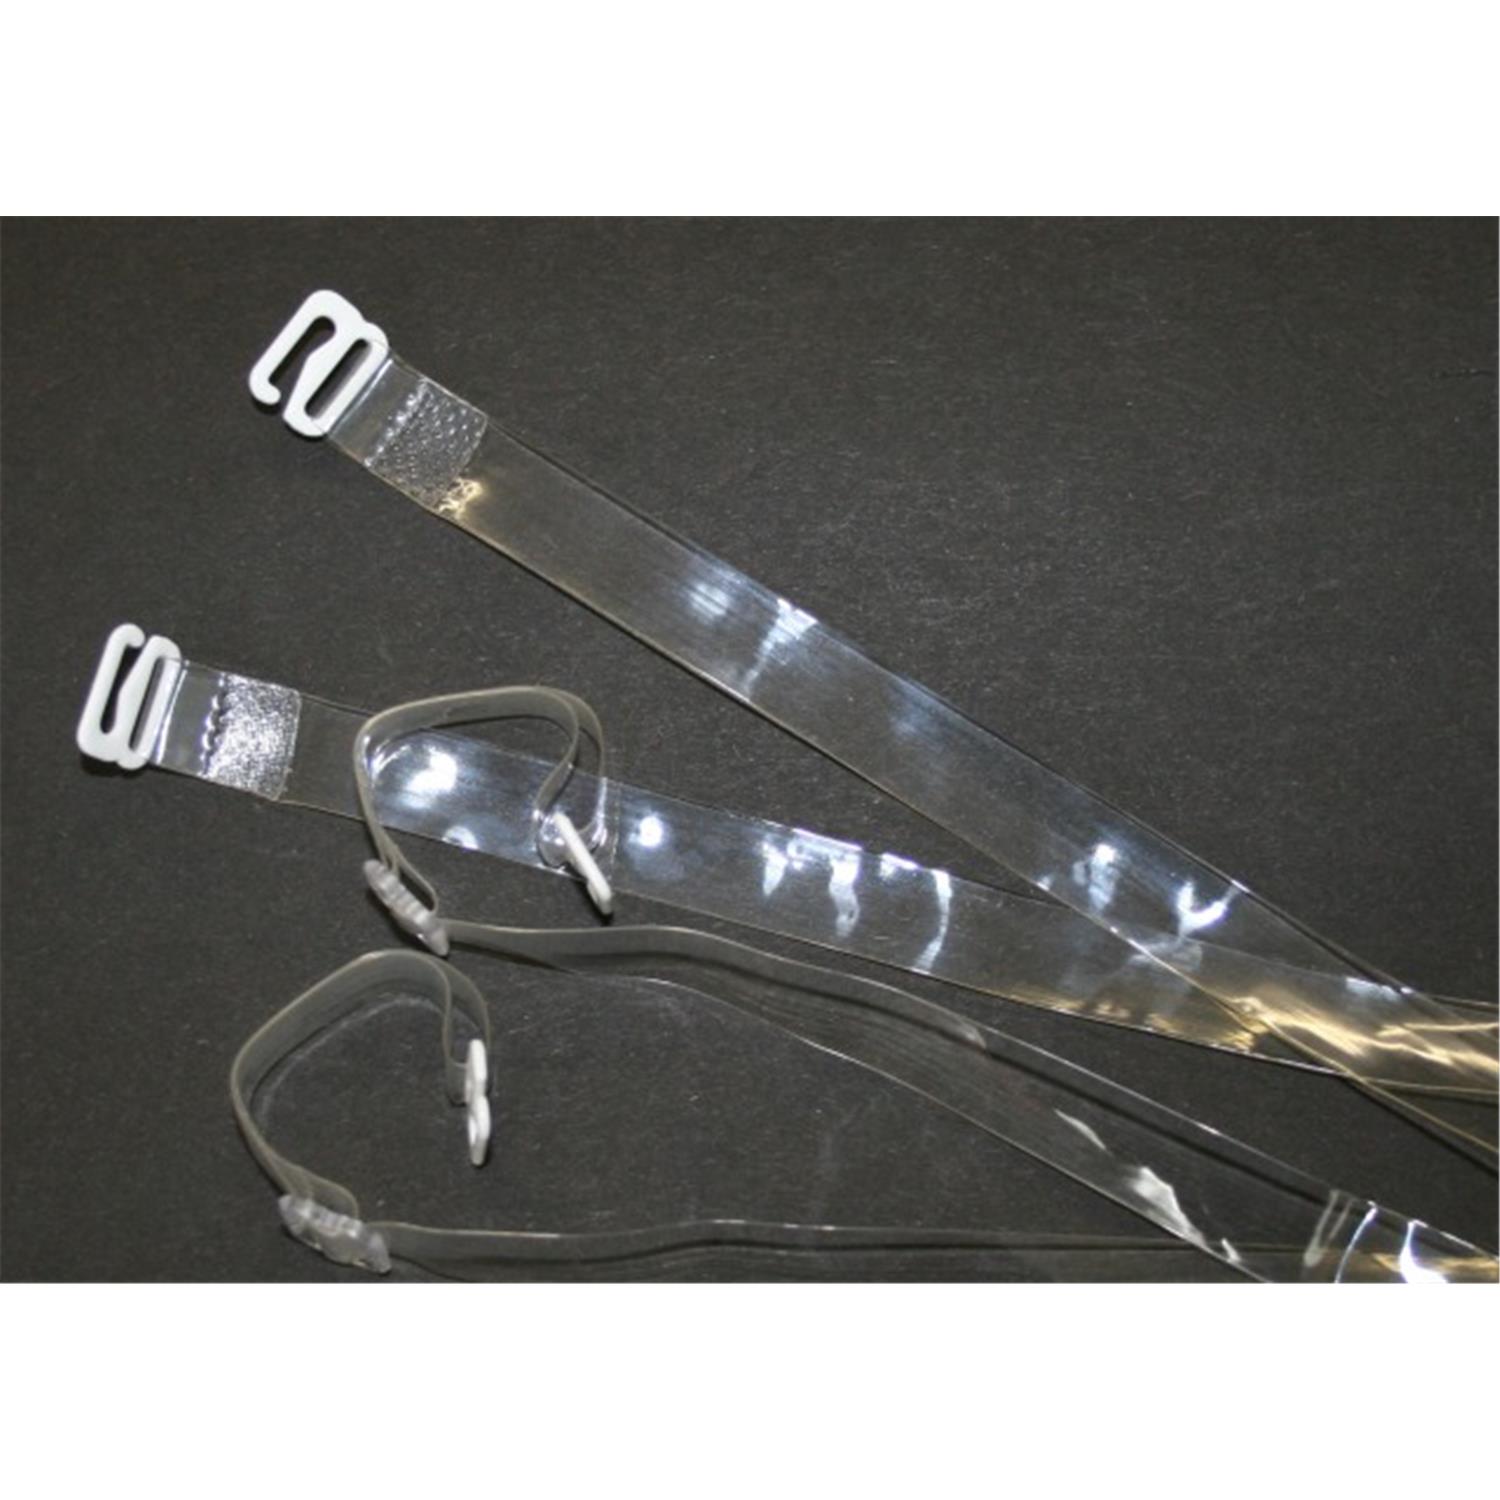 BH Träger / Silikonträger, transparent mit weißen Metallhaken, 10mm breit